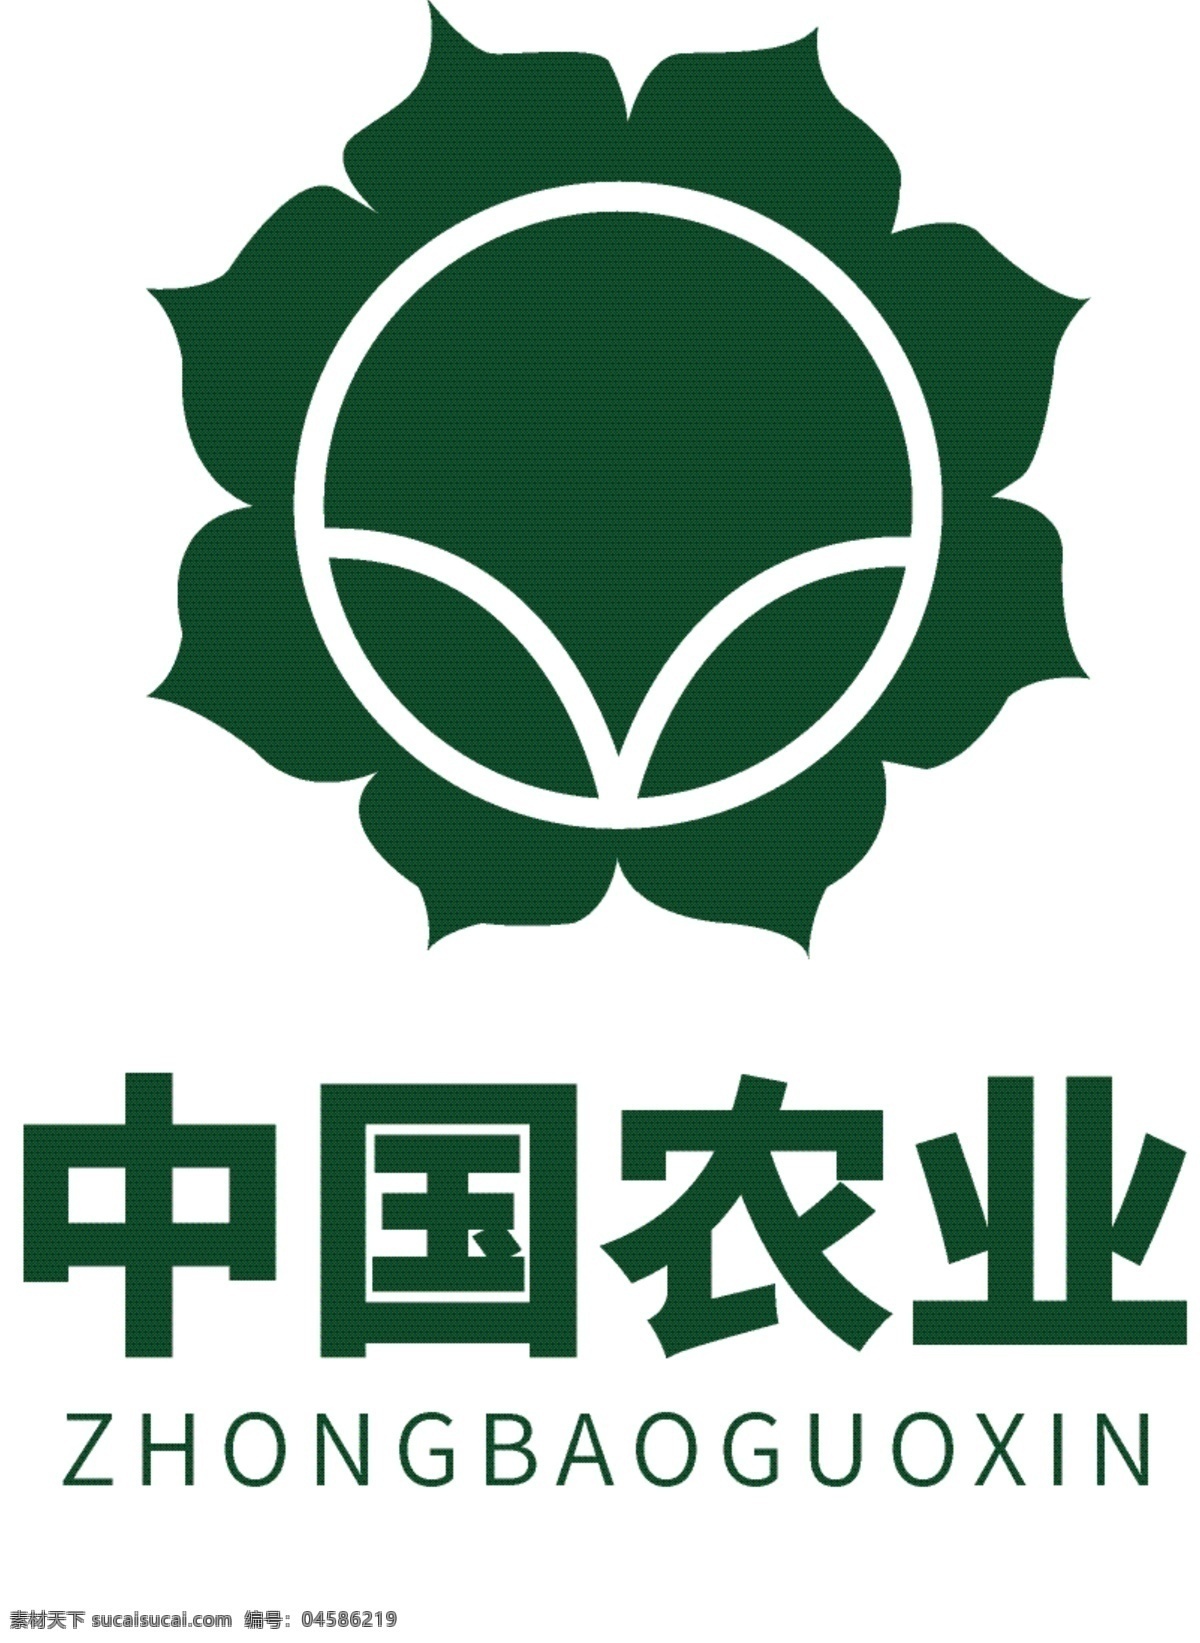 中国 绿色农业 logo 农业logo 绿色logo 荷花logo 种植业 鲜花logo 个人logo